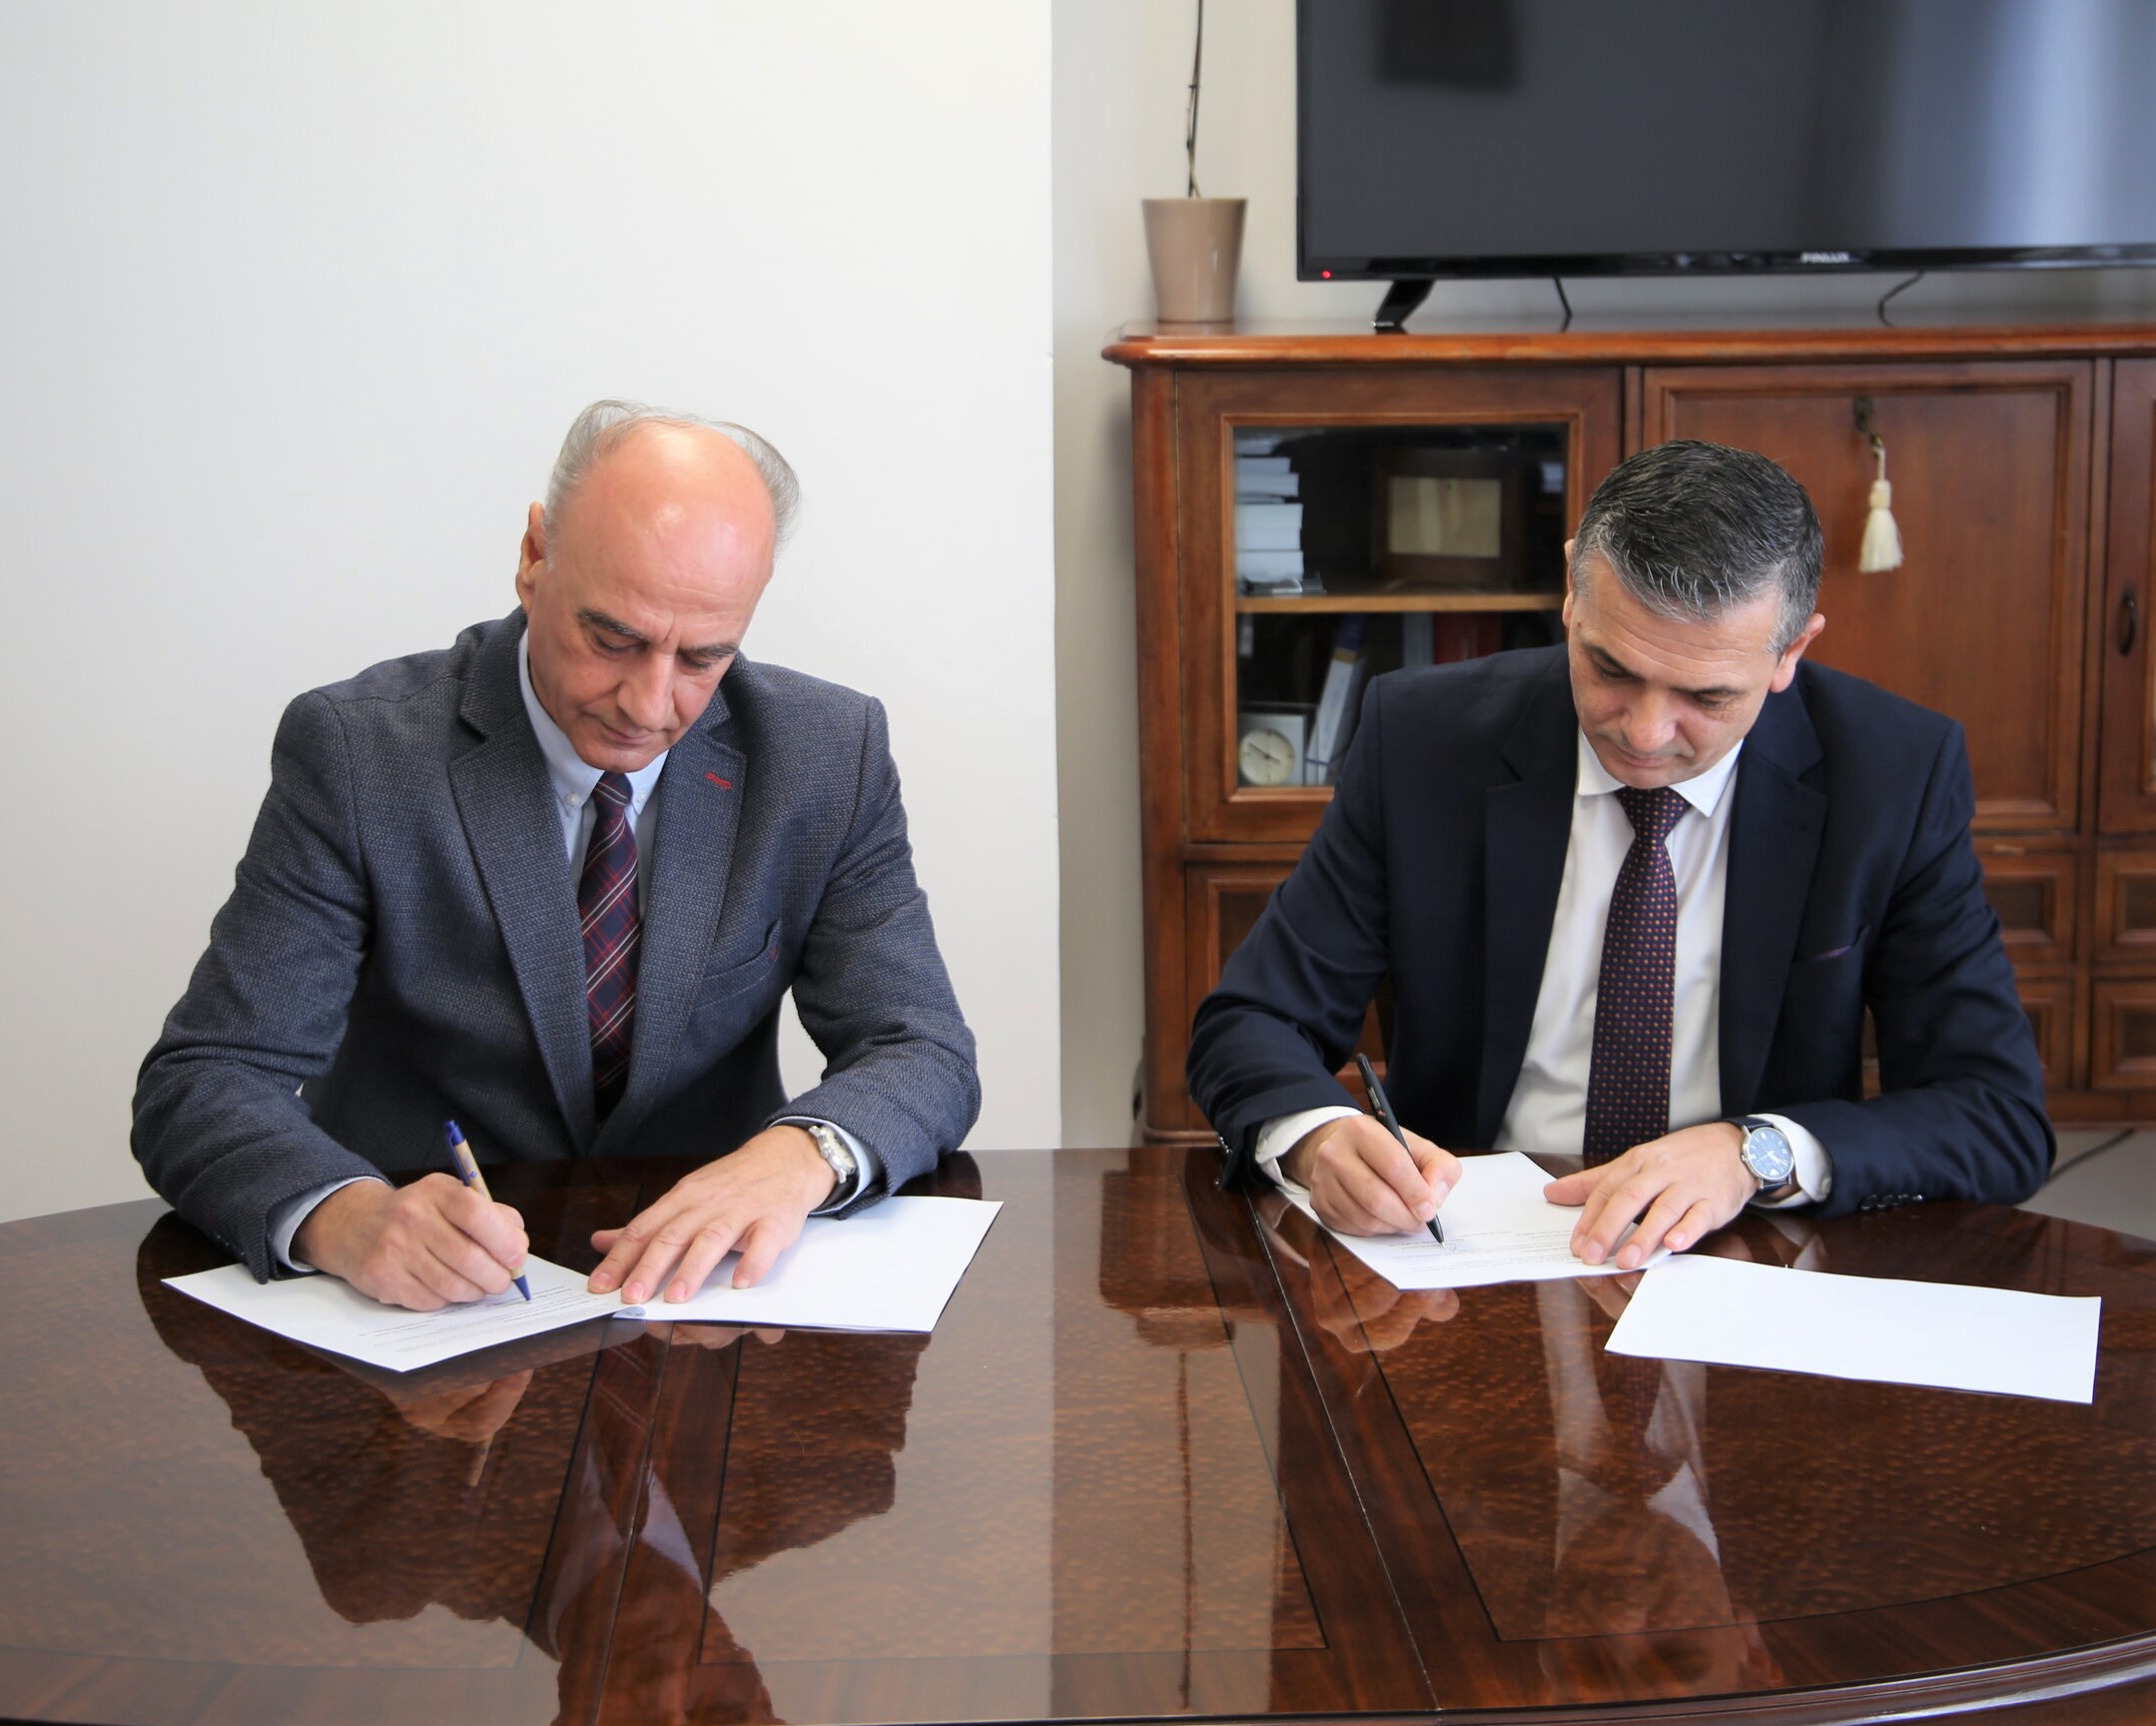 Këshilli Prokurorial i Kosovës dhe Akademia e Drejtësisë nënshkruajnë memorandum mirëkuptimi